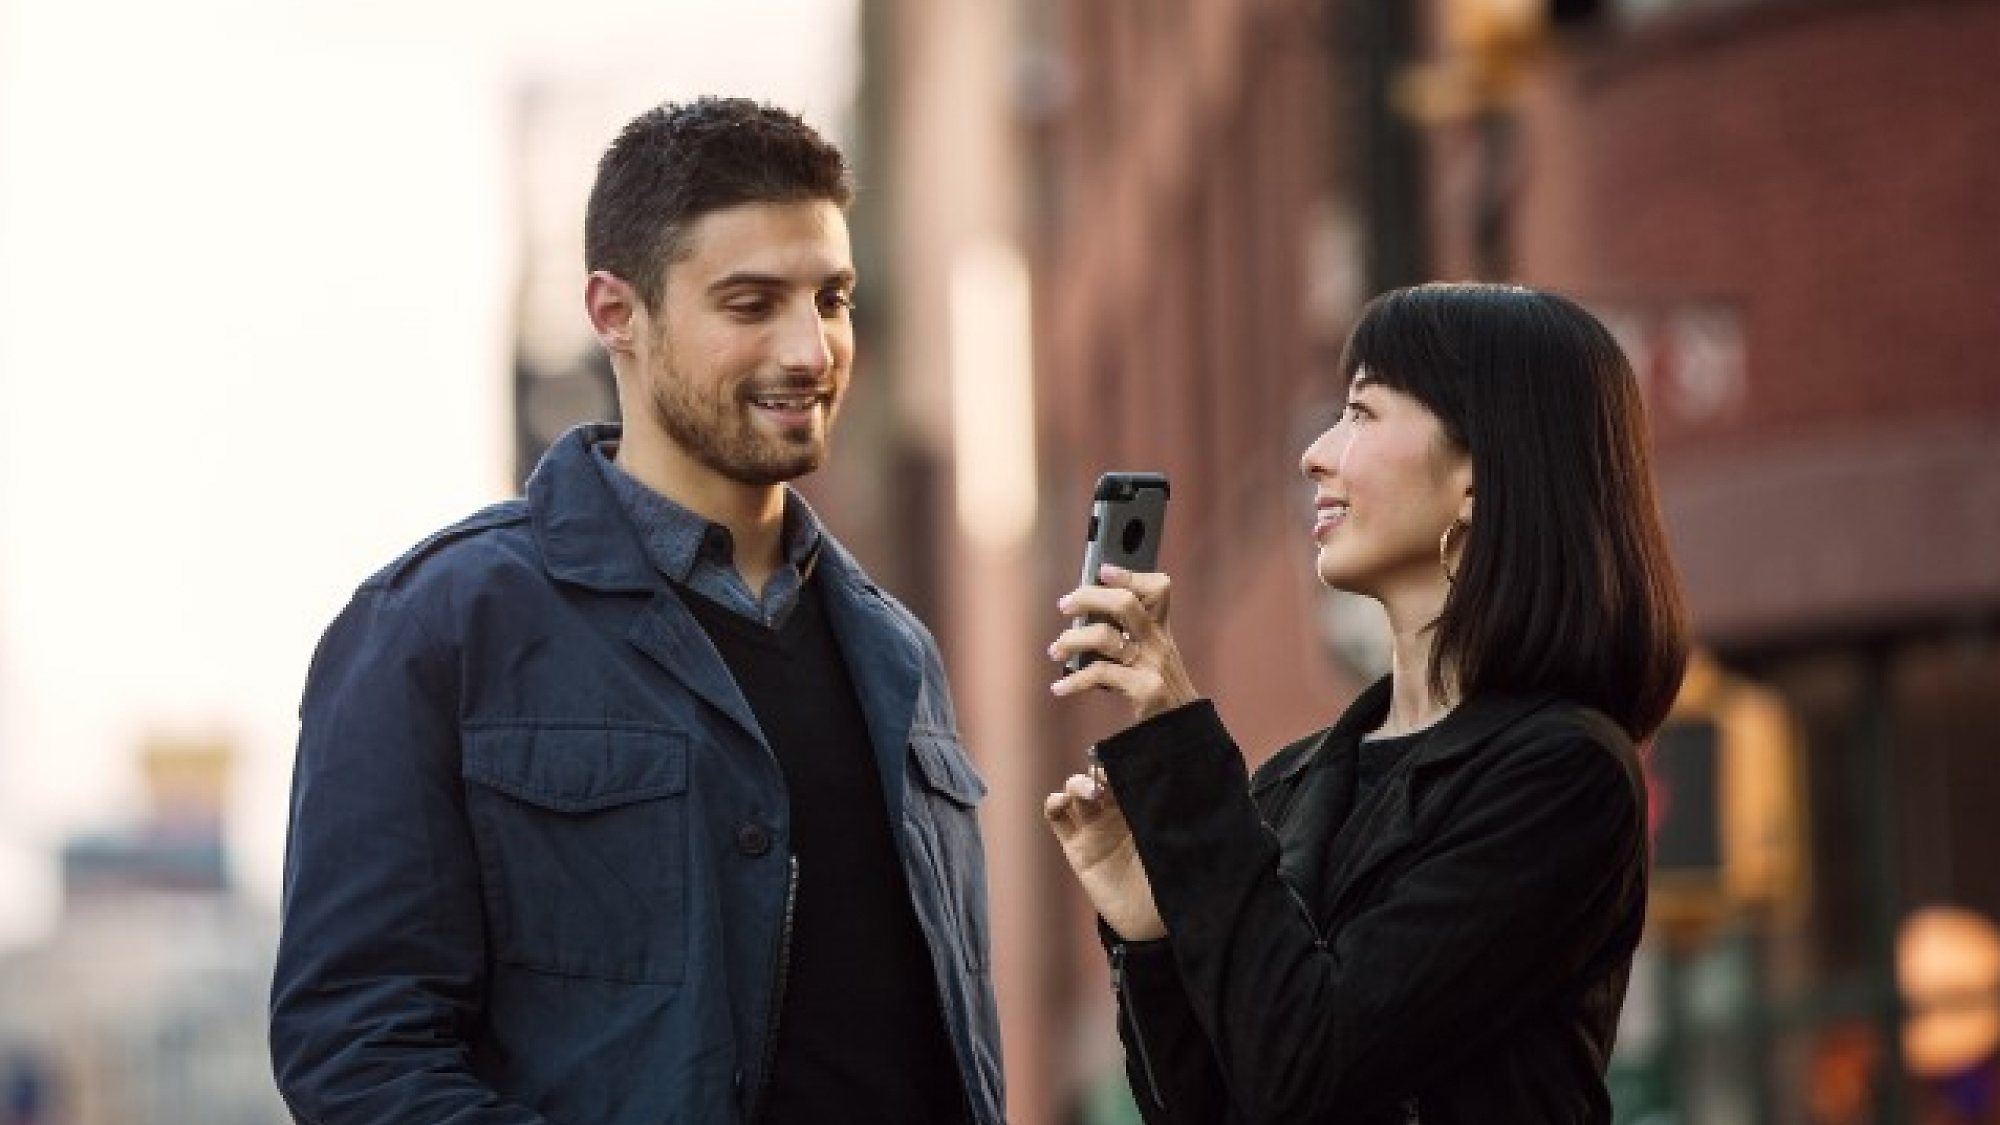 En kvinne holder en smarttelefon og peker den mot en mann mens de begge står i en bygate, smilende og engasjert i samtale.